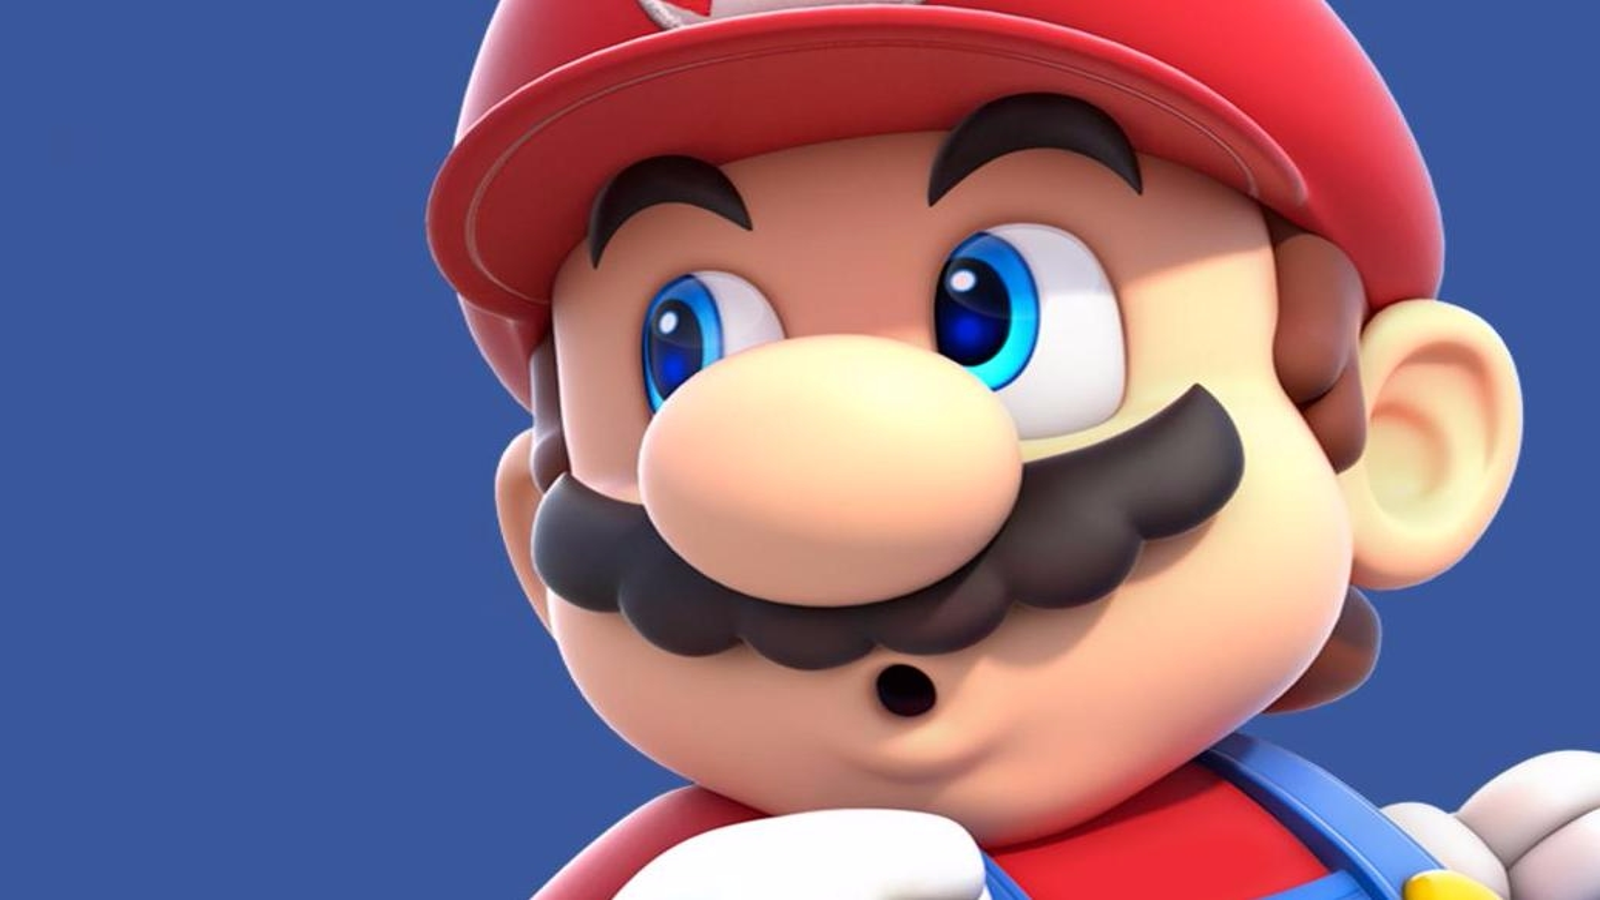 Super Mario Bros 6. Rom Download